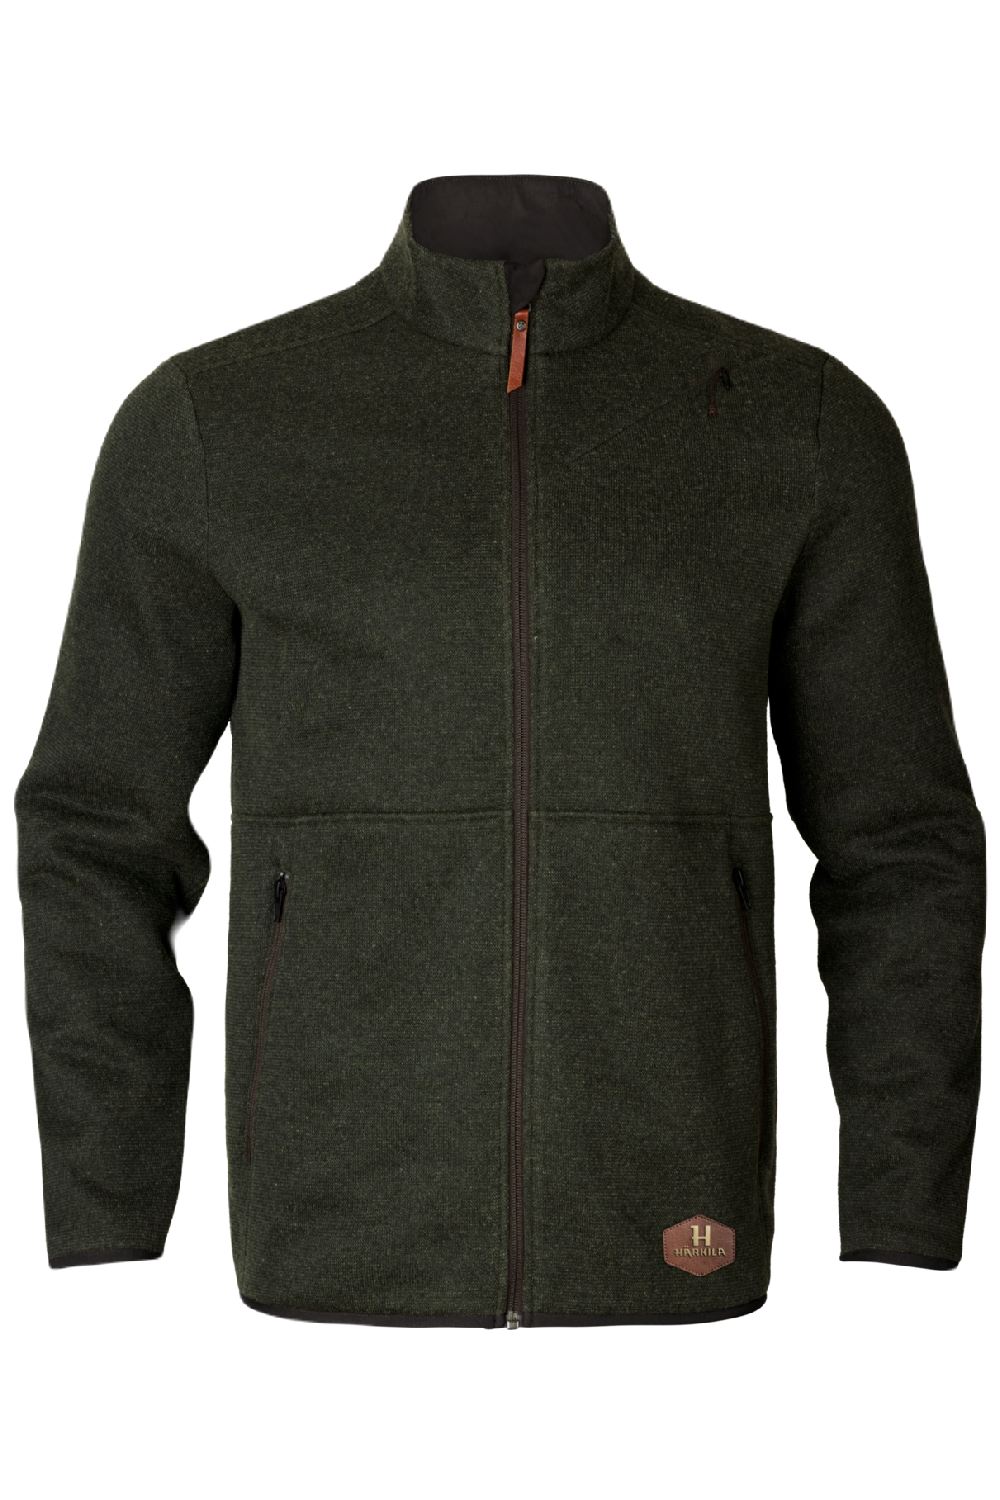 Harkila Metso Full Zip Fleece Jacket in Willow Green 